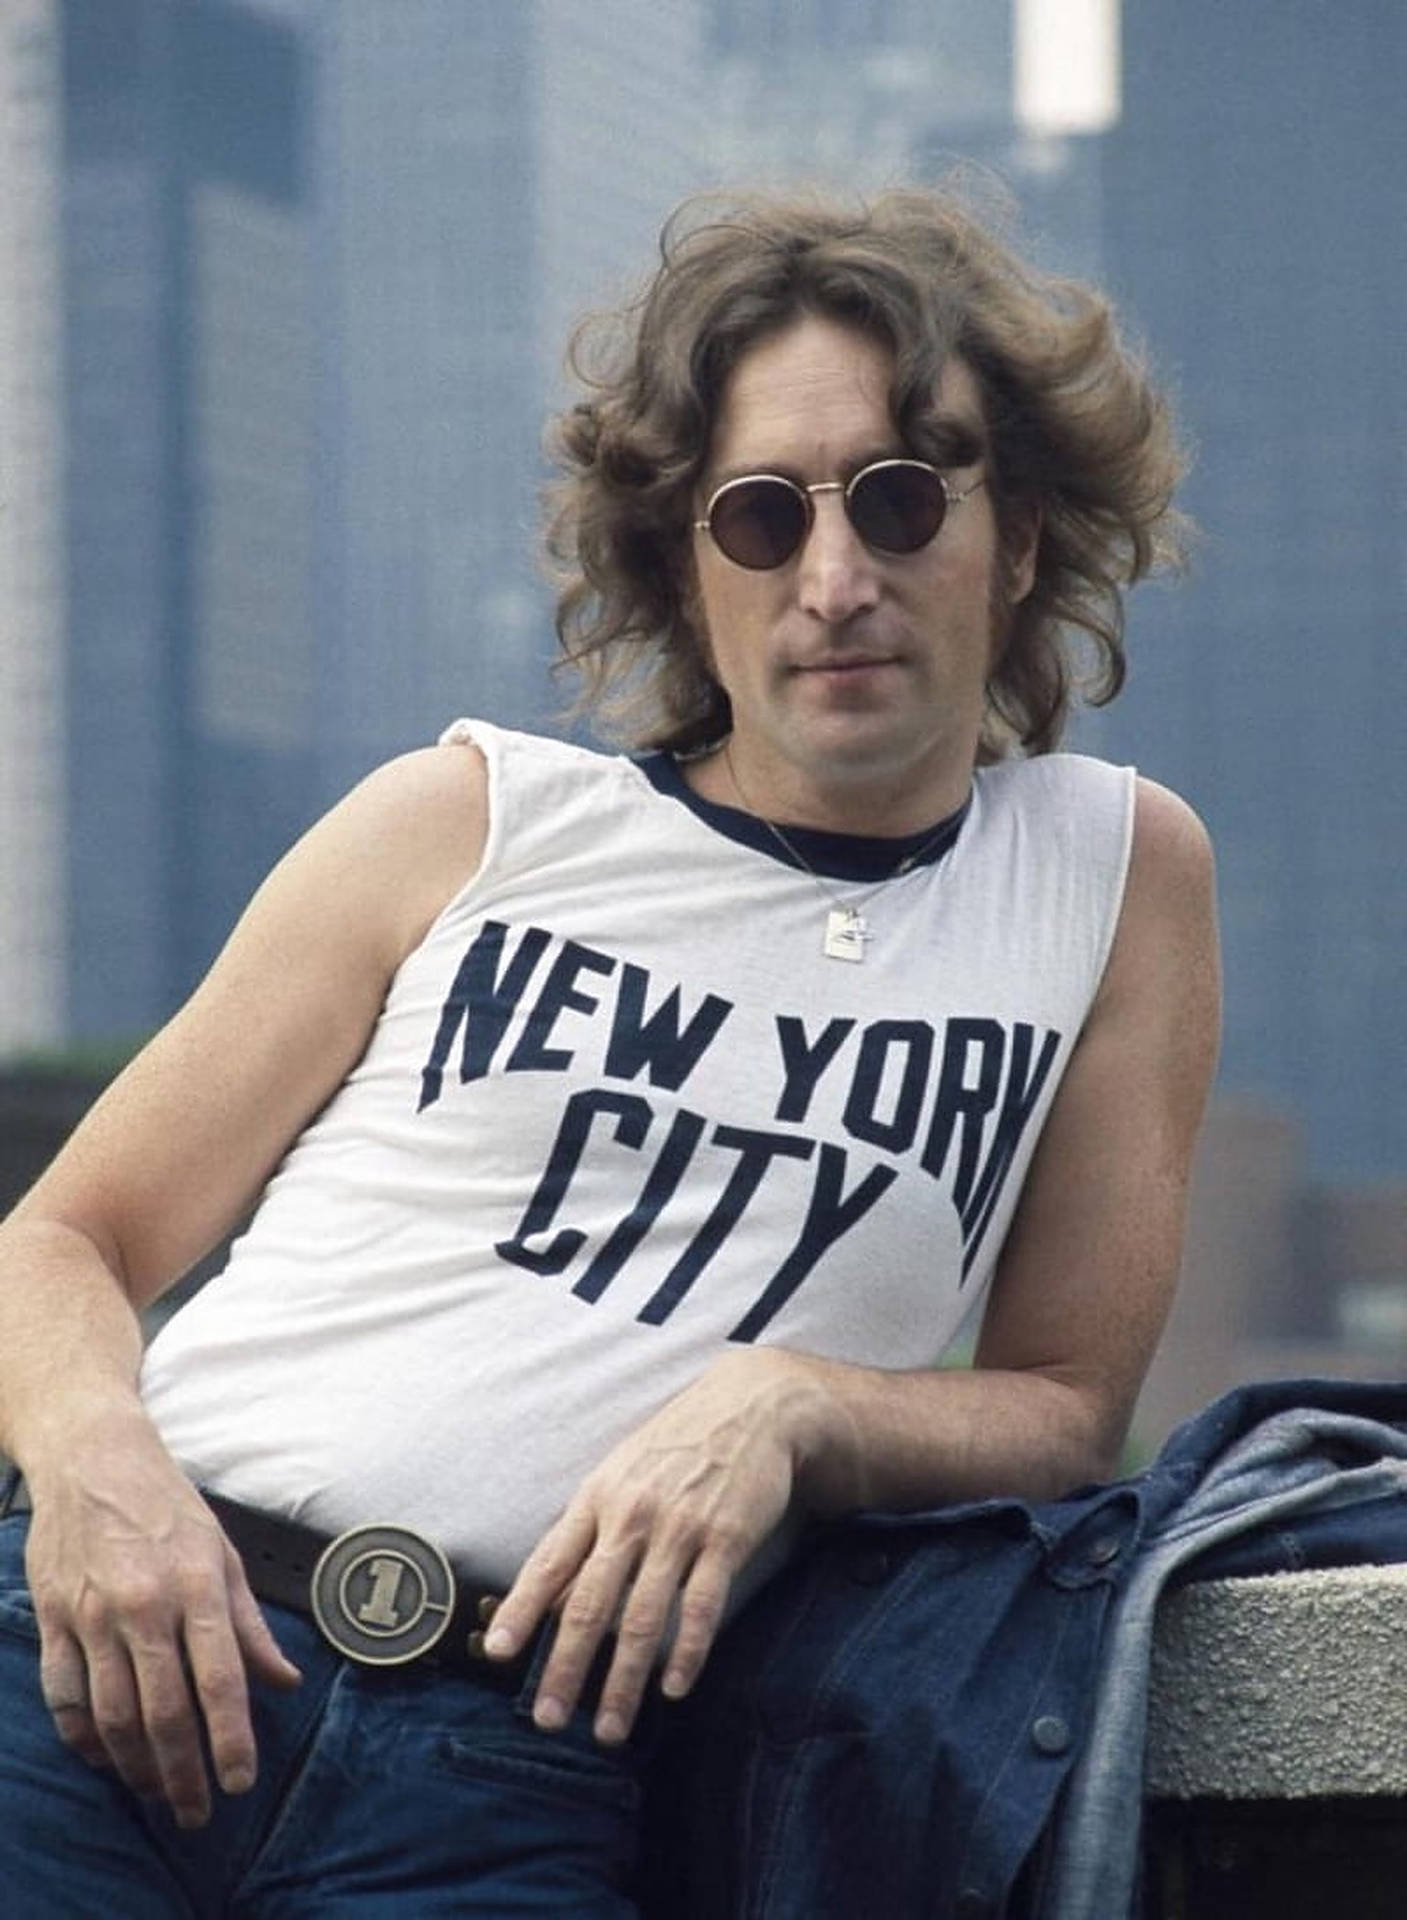 John Lennon Portrait Background